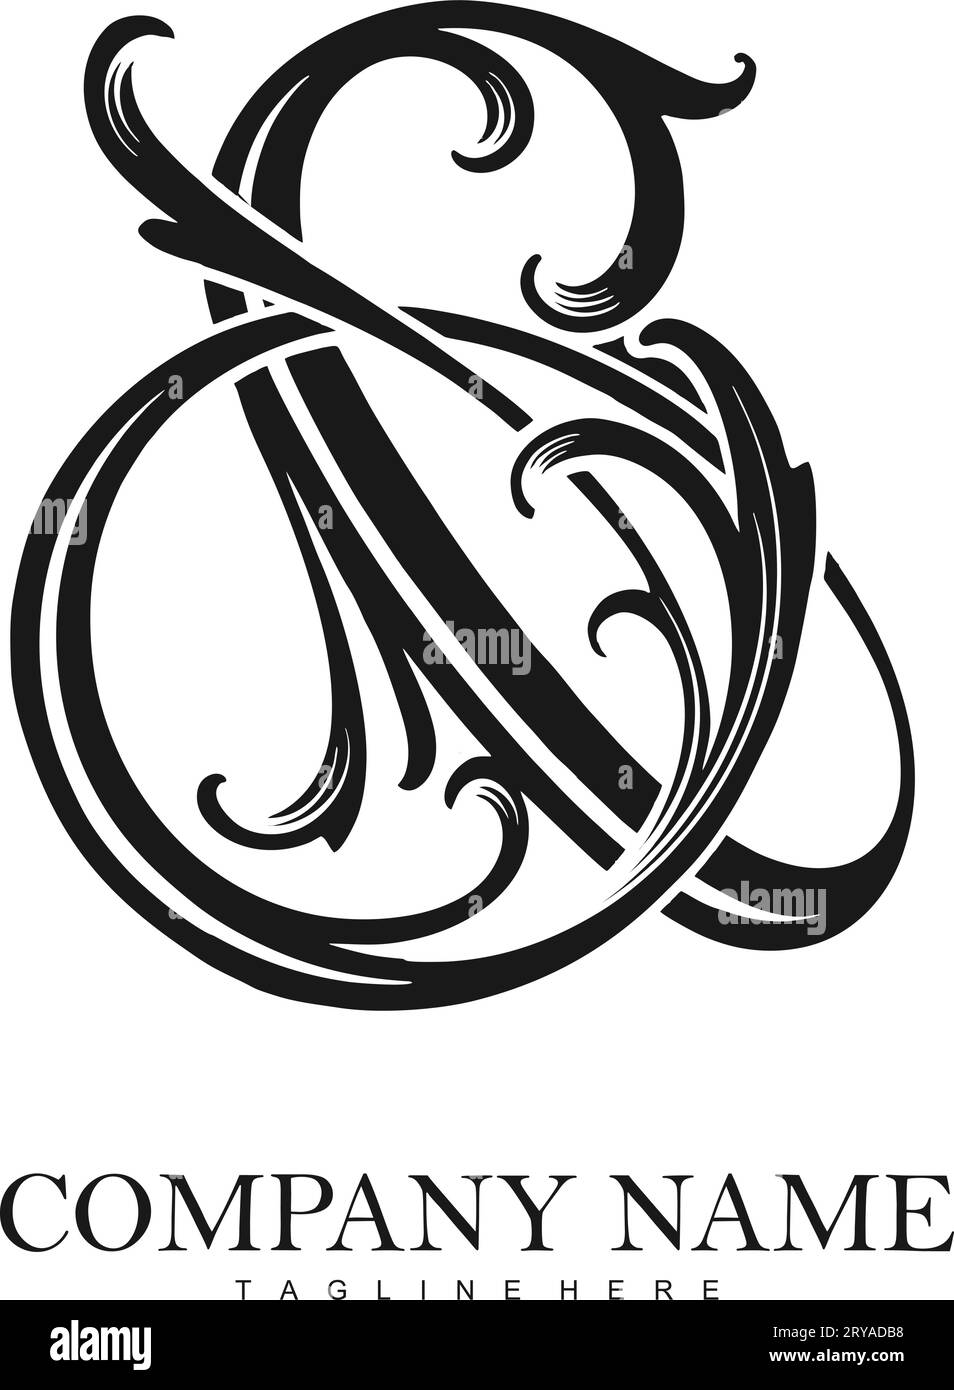 Zeitlose Eleganz florierendes Ampersand-Logo monochrome Vektorillustrationen für Ihr Arbeitslogo, Merchandise-T-Shirt, Aufkleber und Etikettendesigns, Poster, Stock Vektor